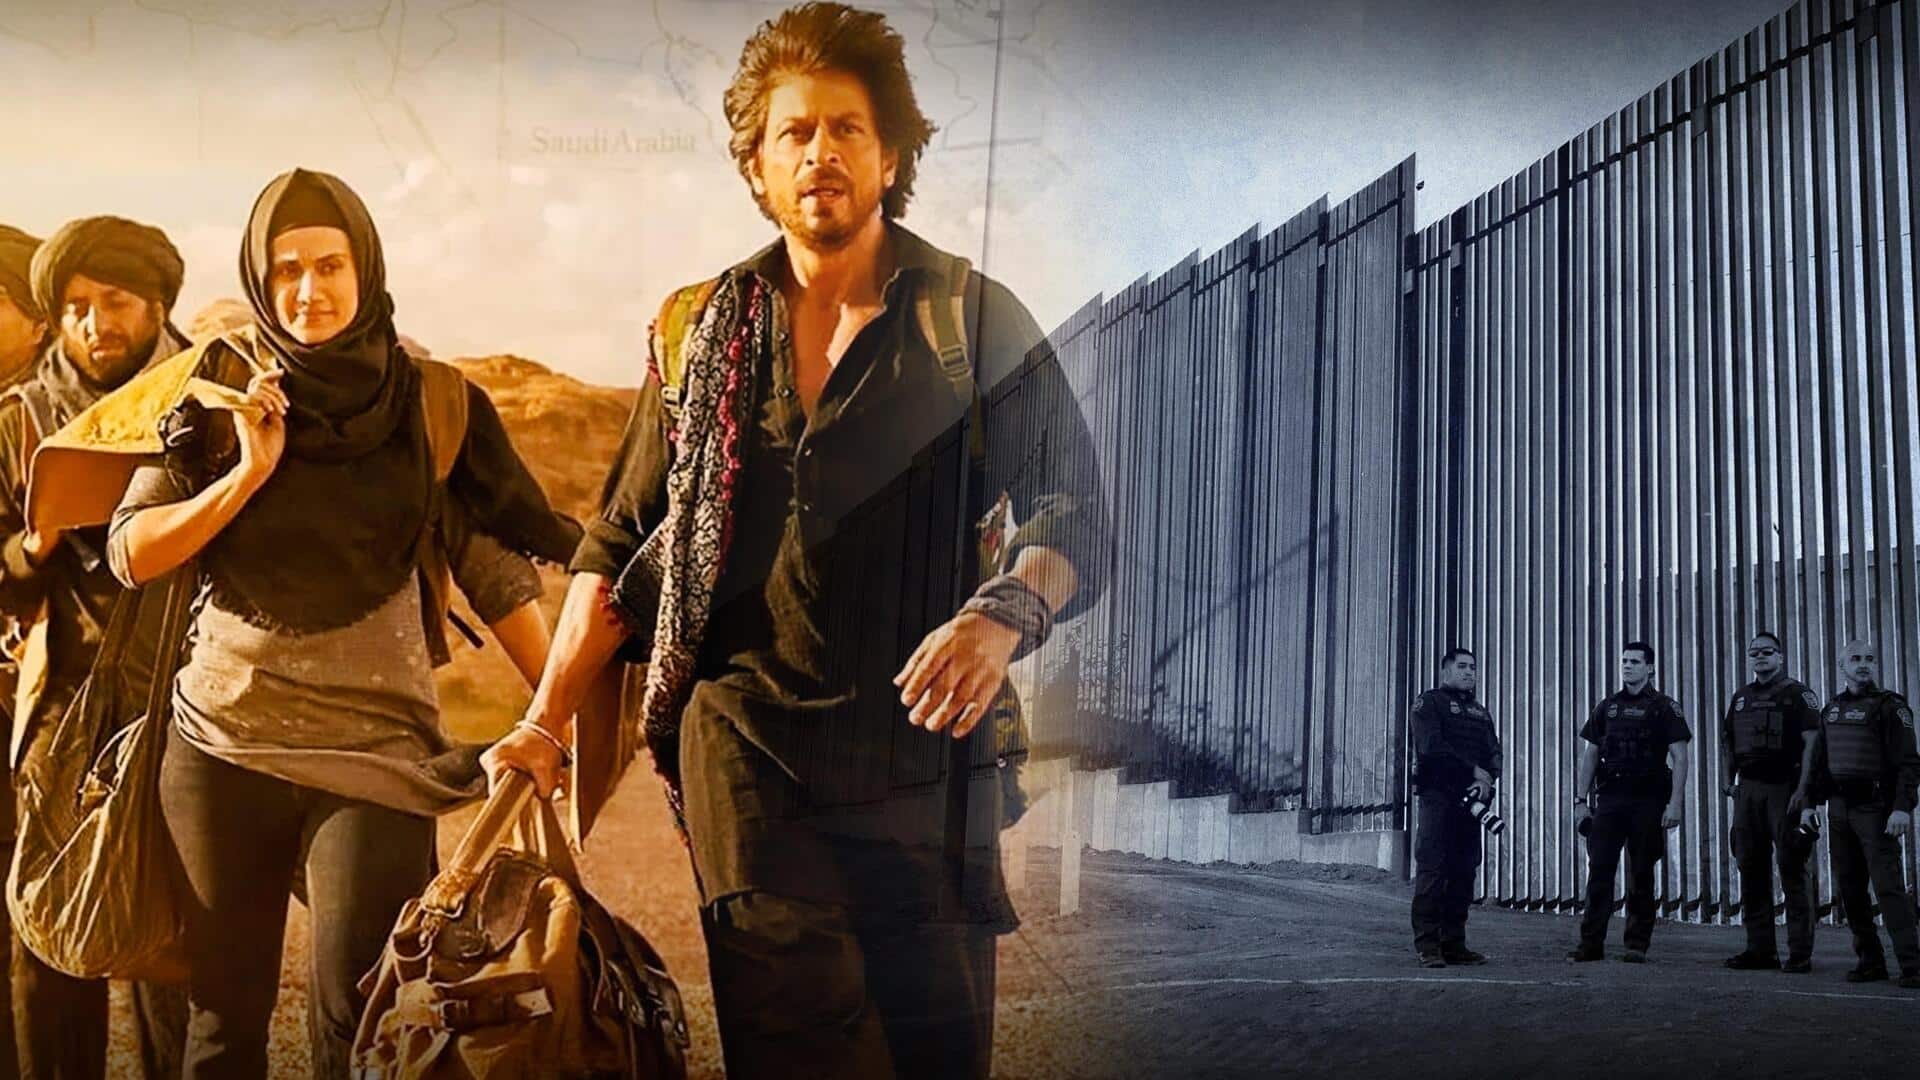 #NewsBytesExplainer: शाहरुख खान की फिल्म 'डंकी' के बाद चर्चा में आए डंकी रूट्स क्या होते हैं?